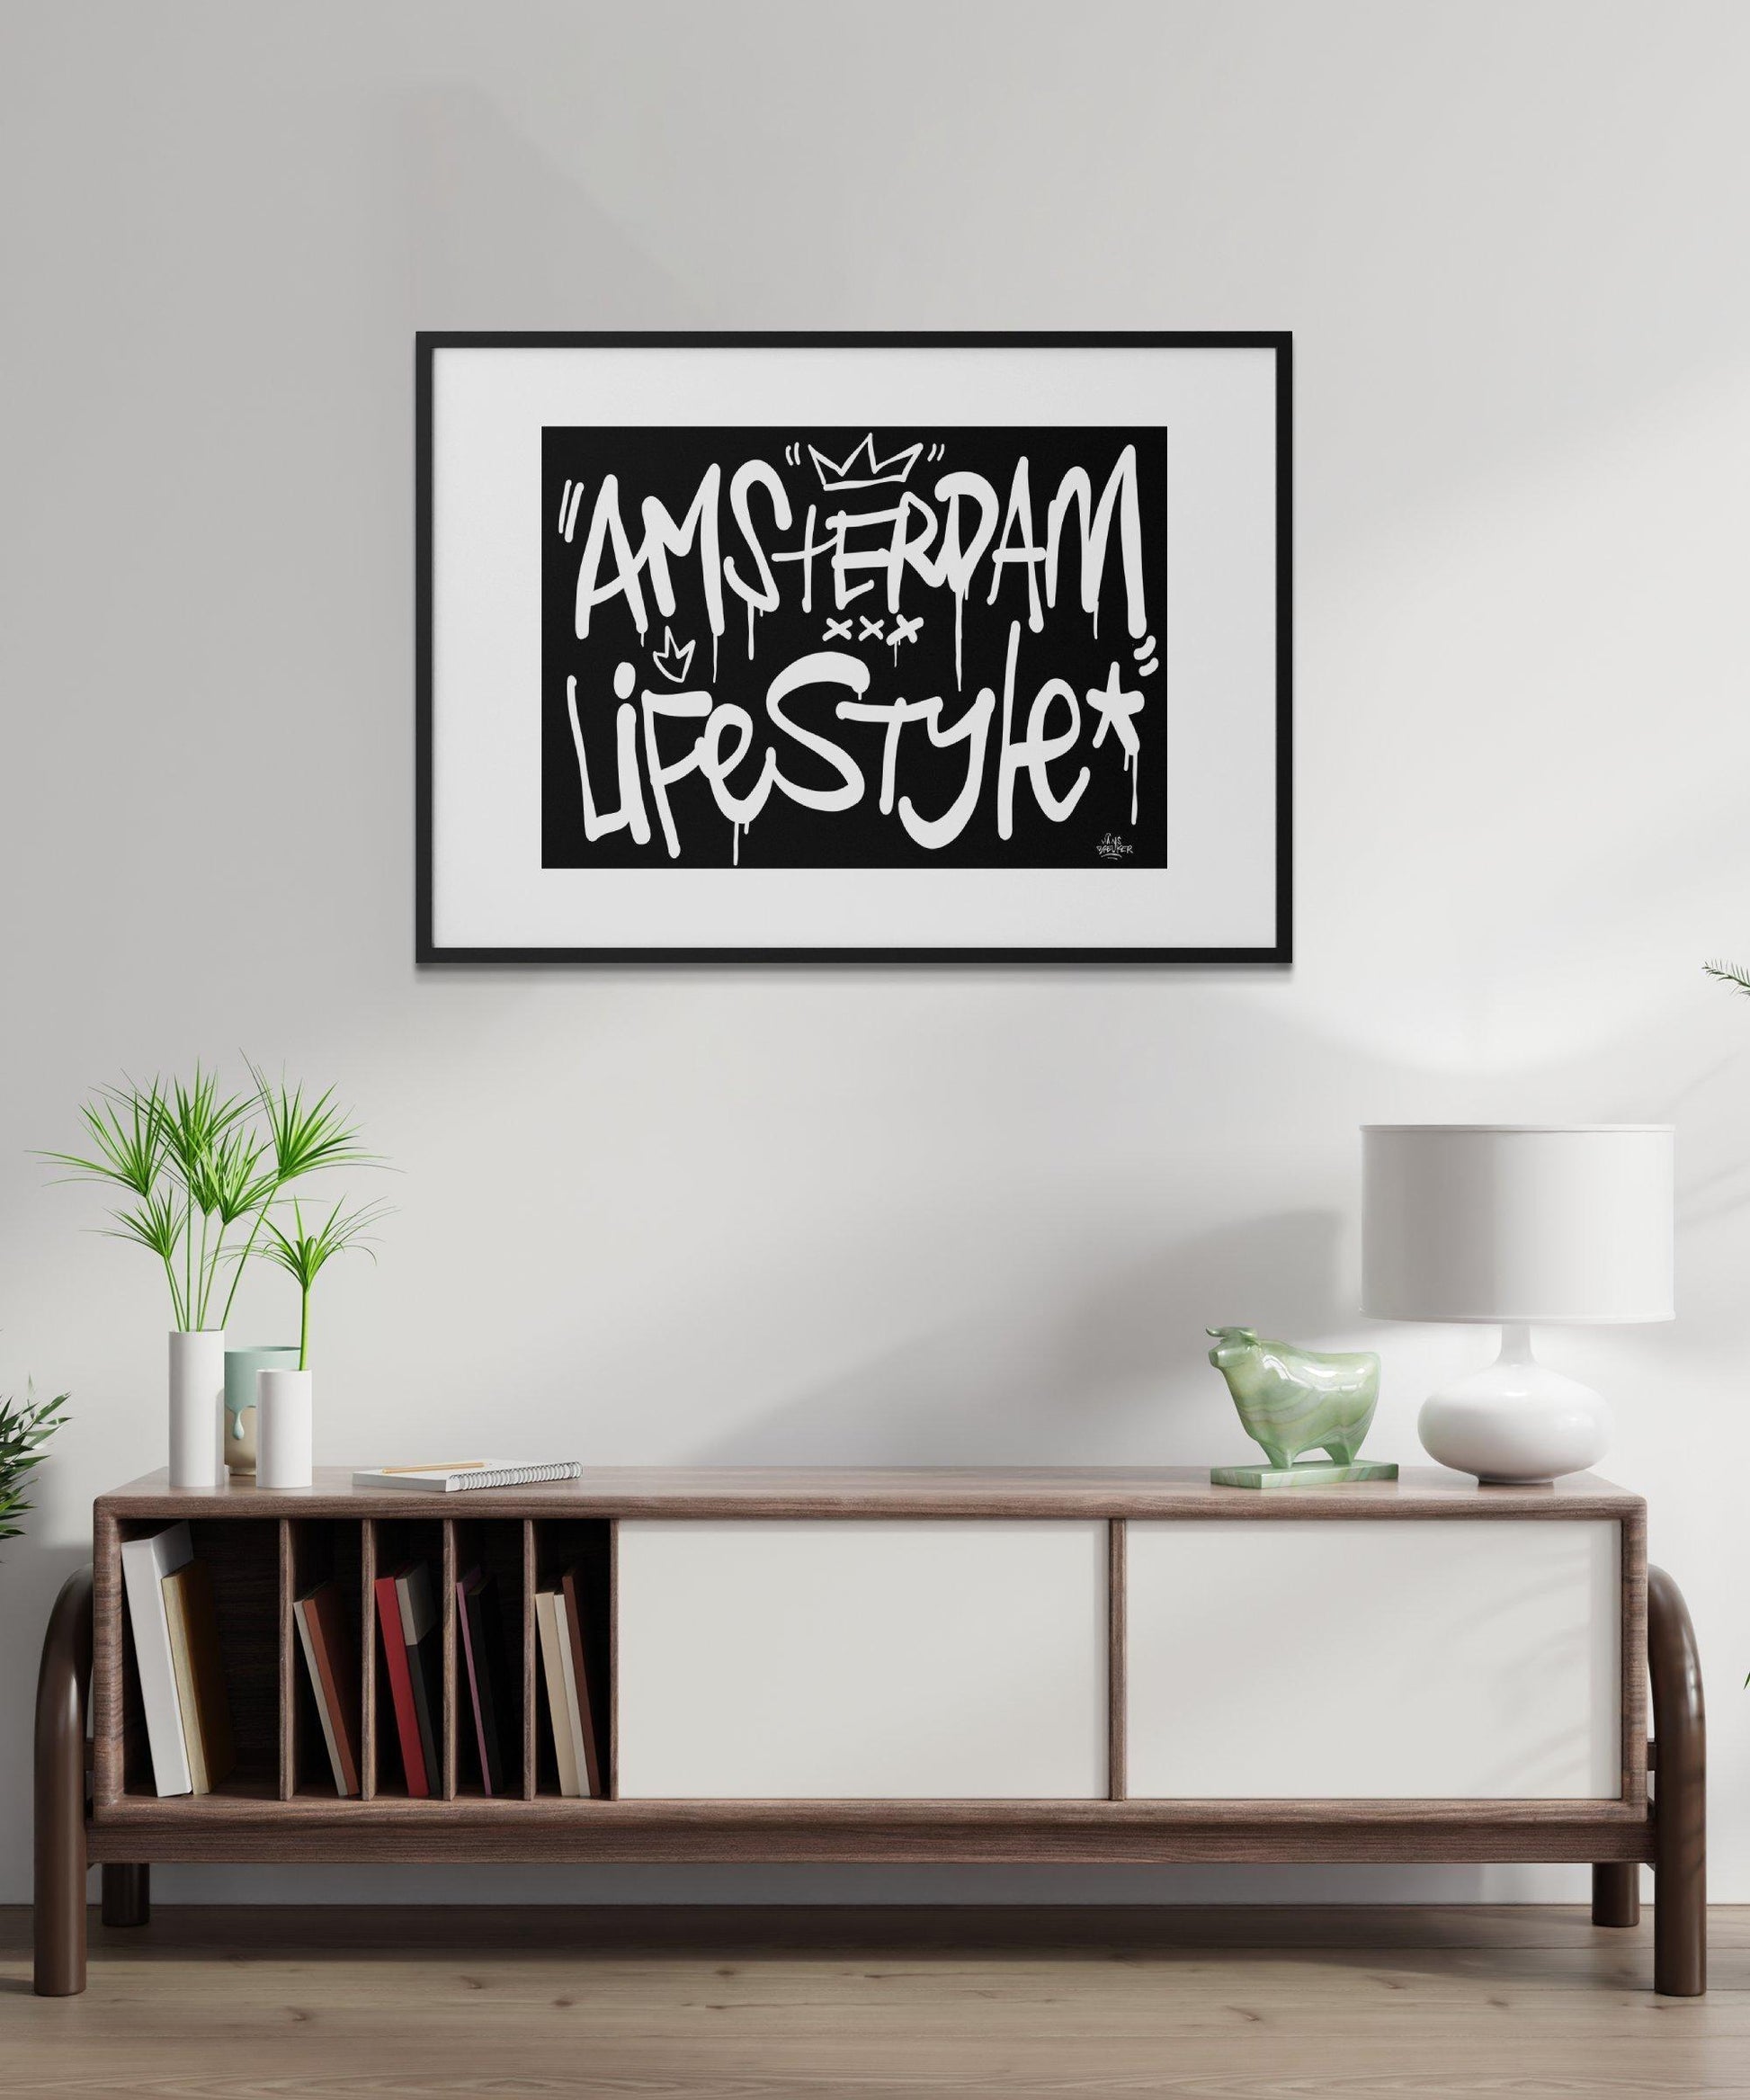 Amsterdam lifestyle streetart letters - Hans Breuker